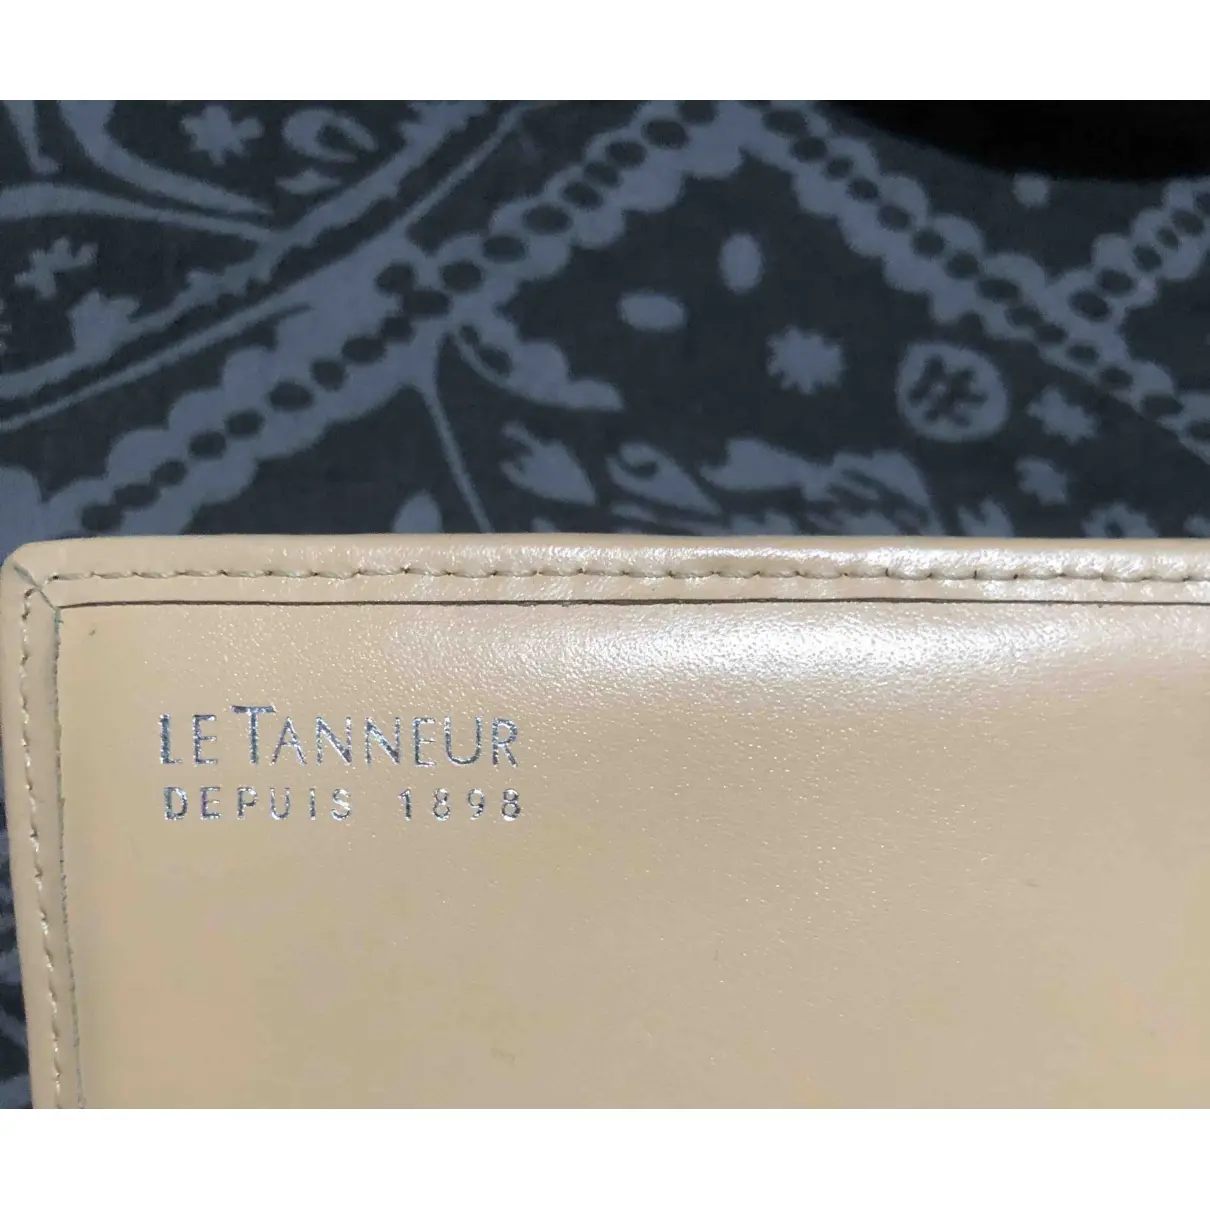 Buy Le Tanneur Leather wallet online - Vintage